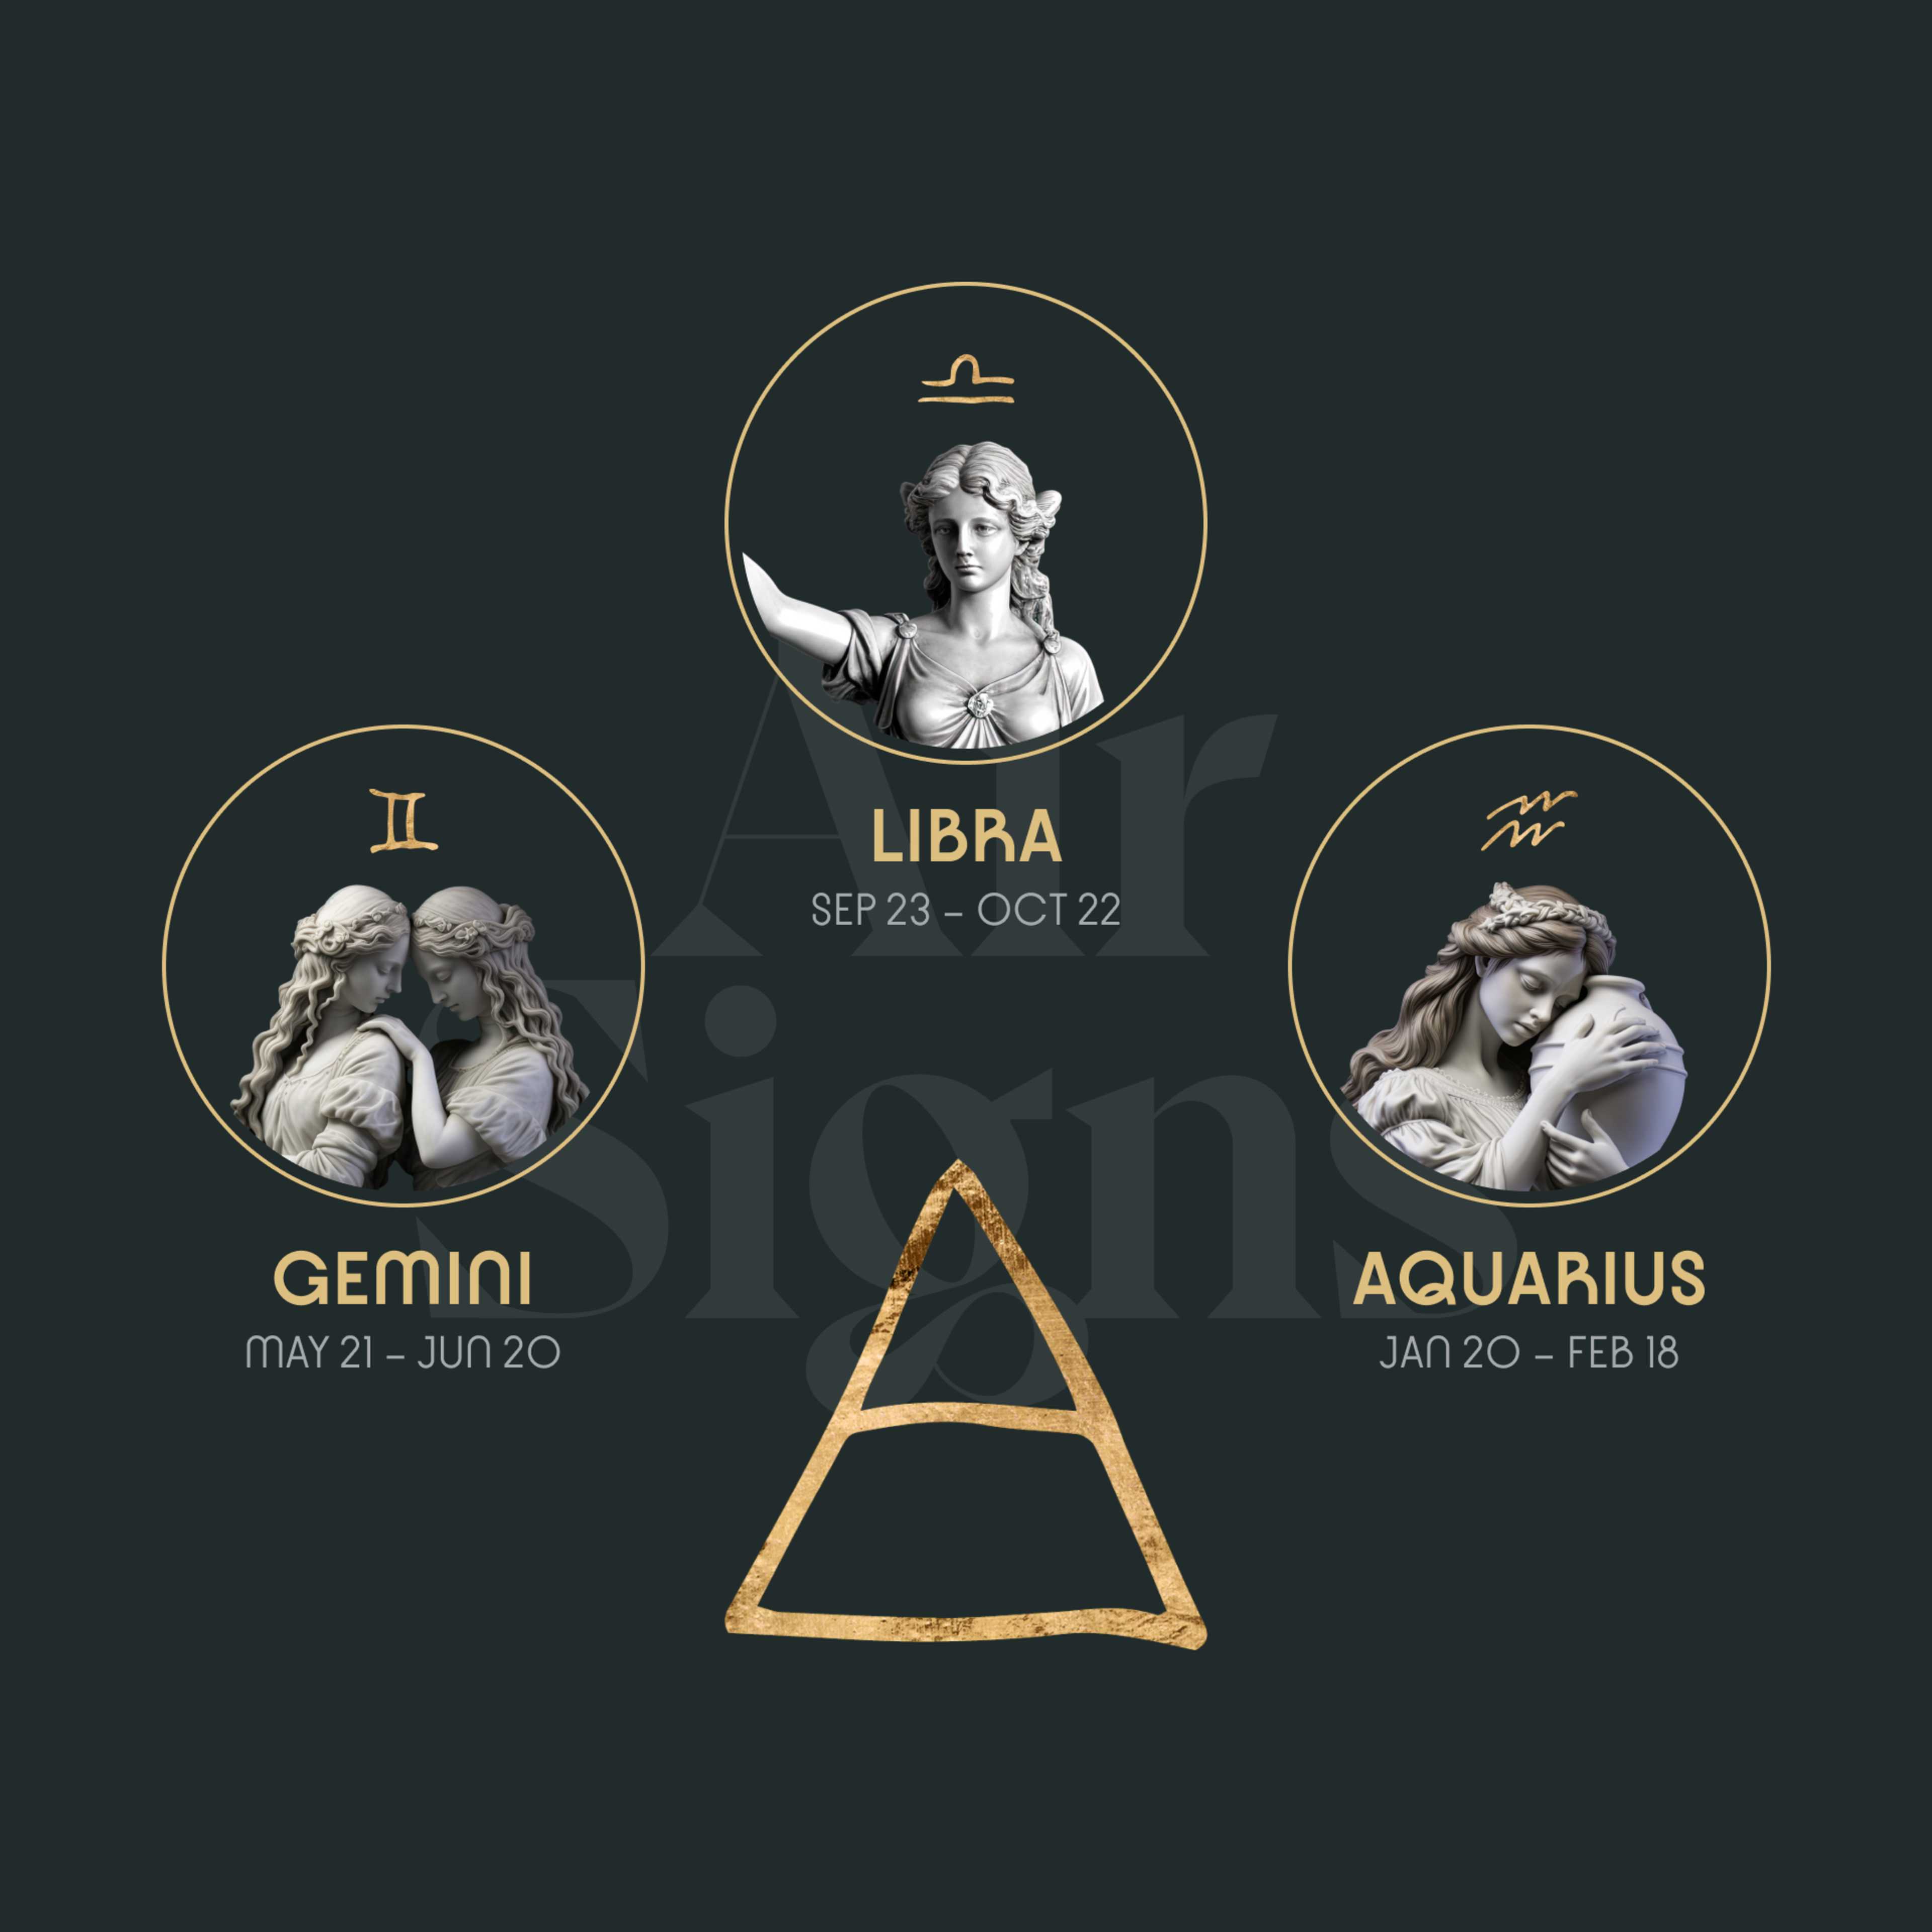 Air Signs: Gemini, Libra and Aquarius